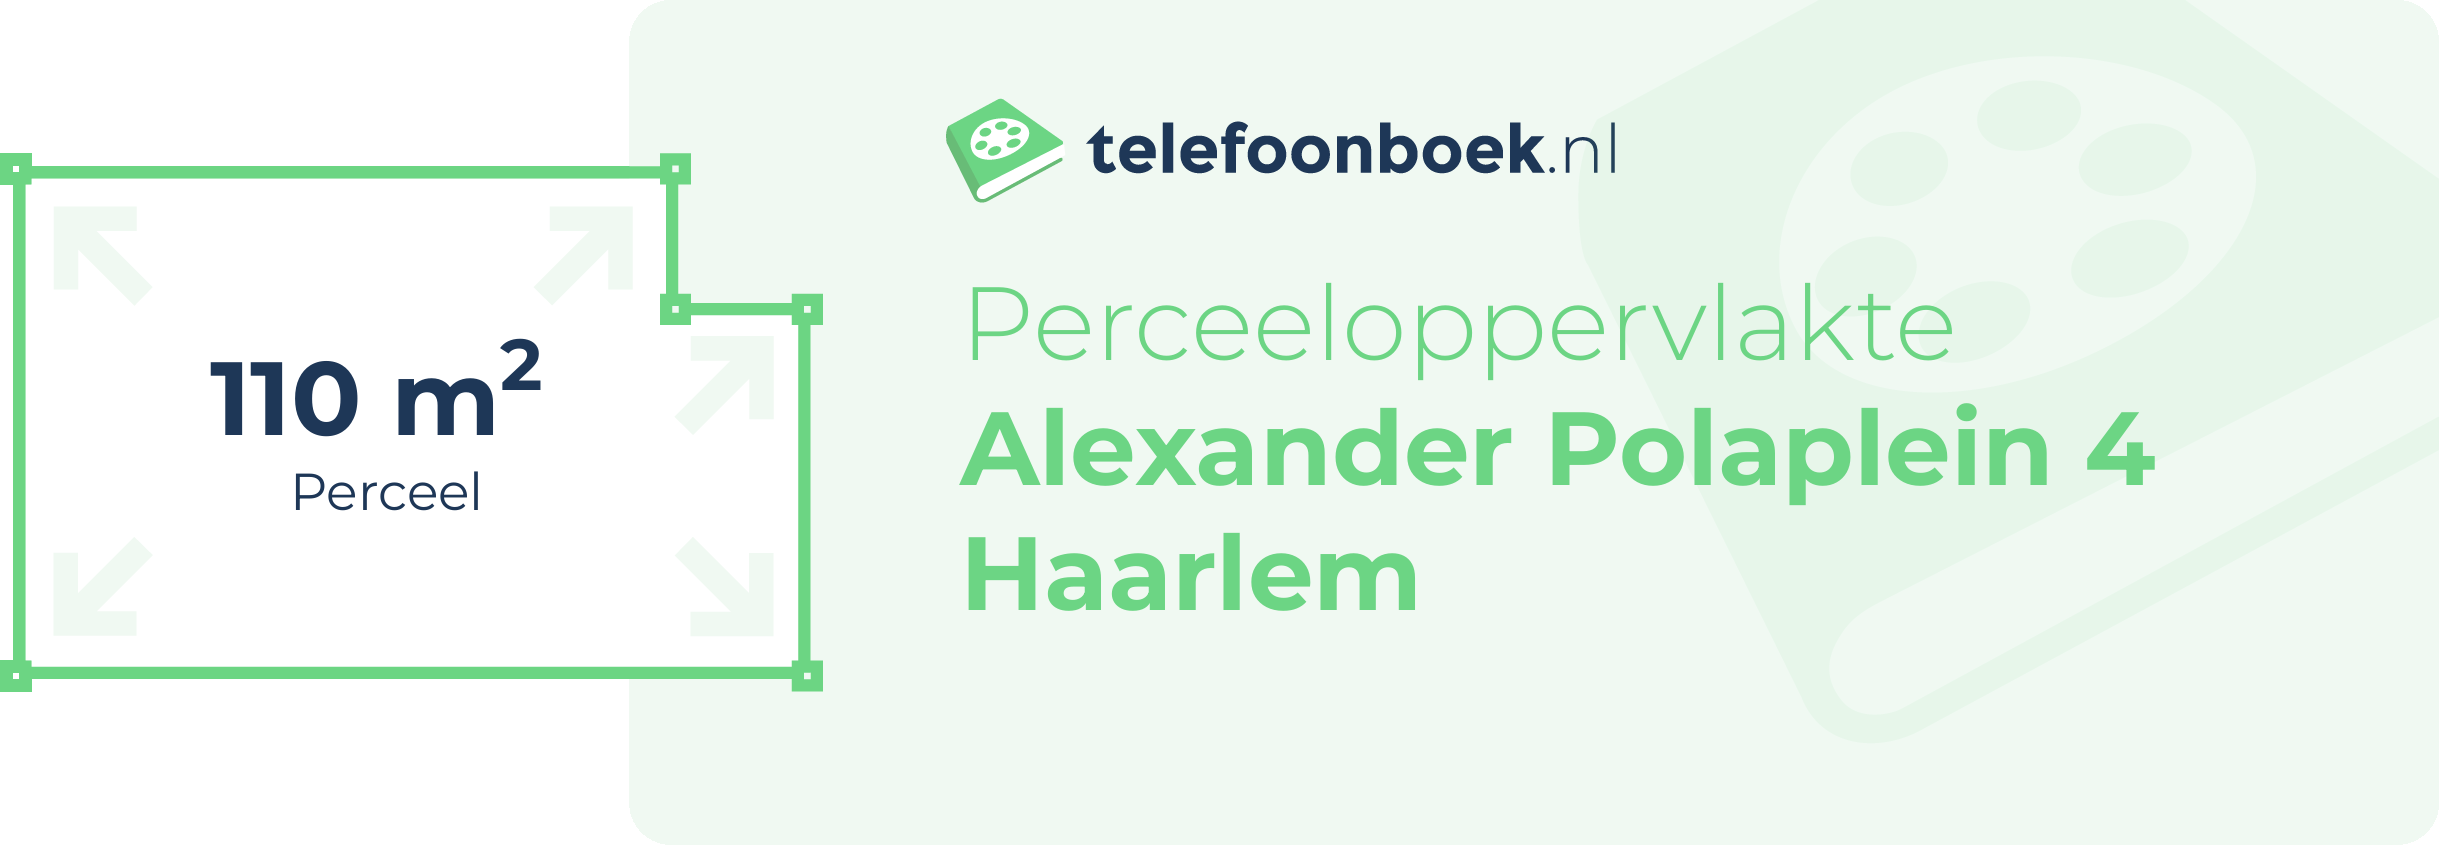 Perceeloppervlakte Alexander Polaplein 4 Haarlem